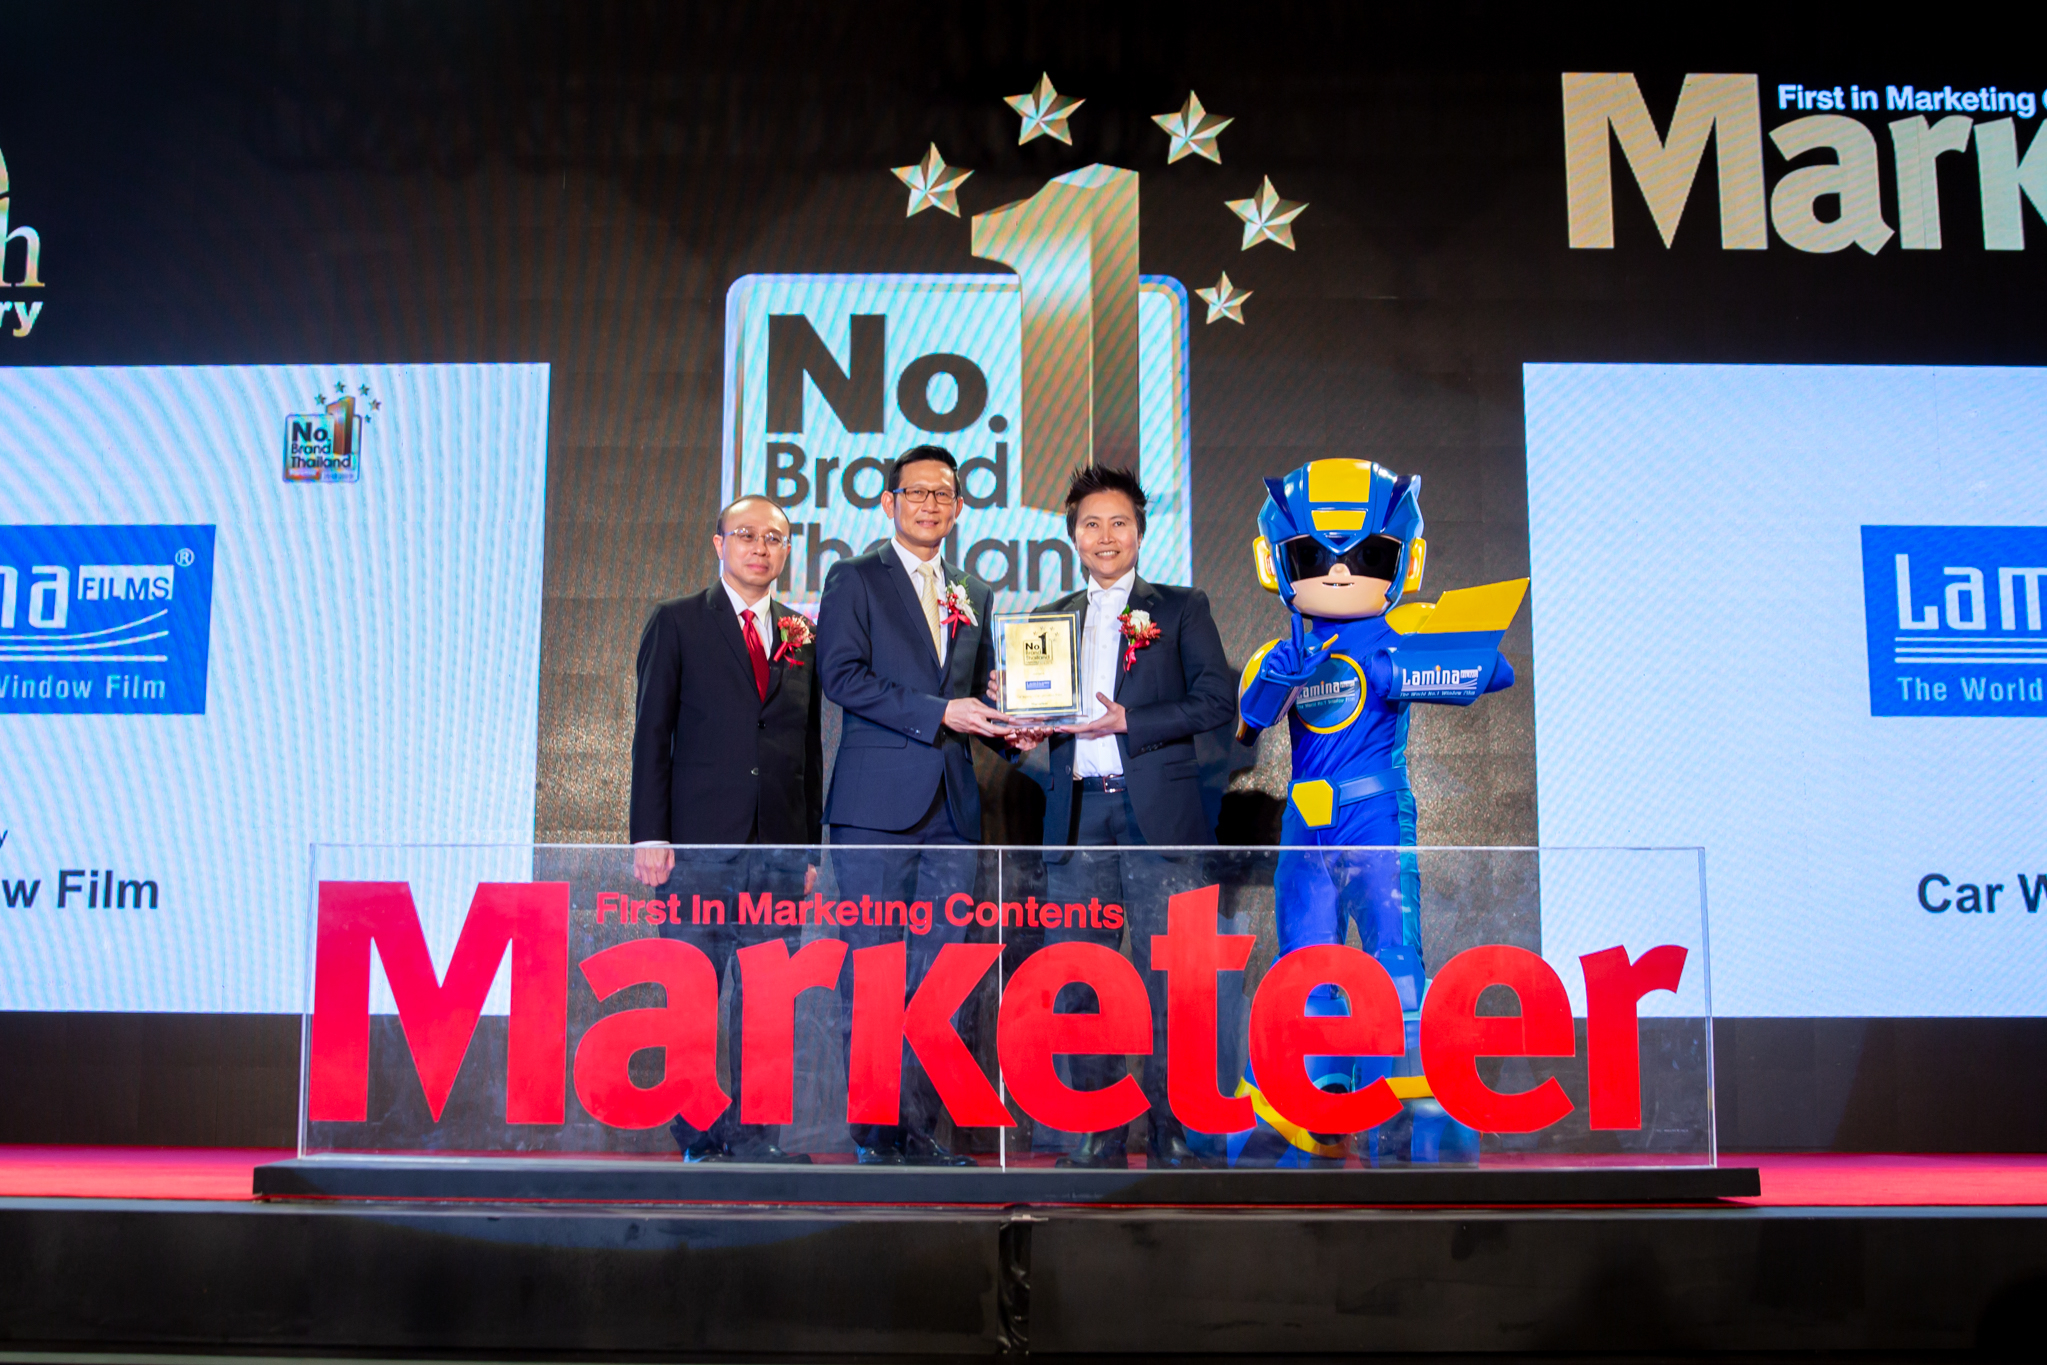 ลามิน่าครองใจผู้บริโภคต่อเนื่อง คว้ารางวัล Marketeer No.1 Brand Thailand 2018-2019 หรือ รางวัลแบรนด์ยอดนิยมอันดับ 1  จากผลสำรวจผู้ใช้งานจริง จัดโดยนิตยสารมาร์เก็ตเธียร์